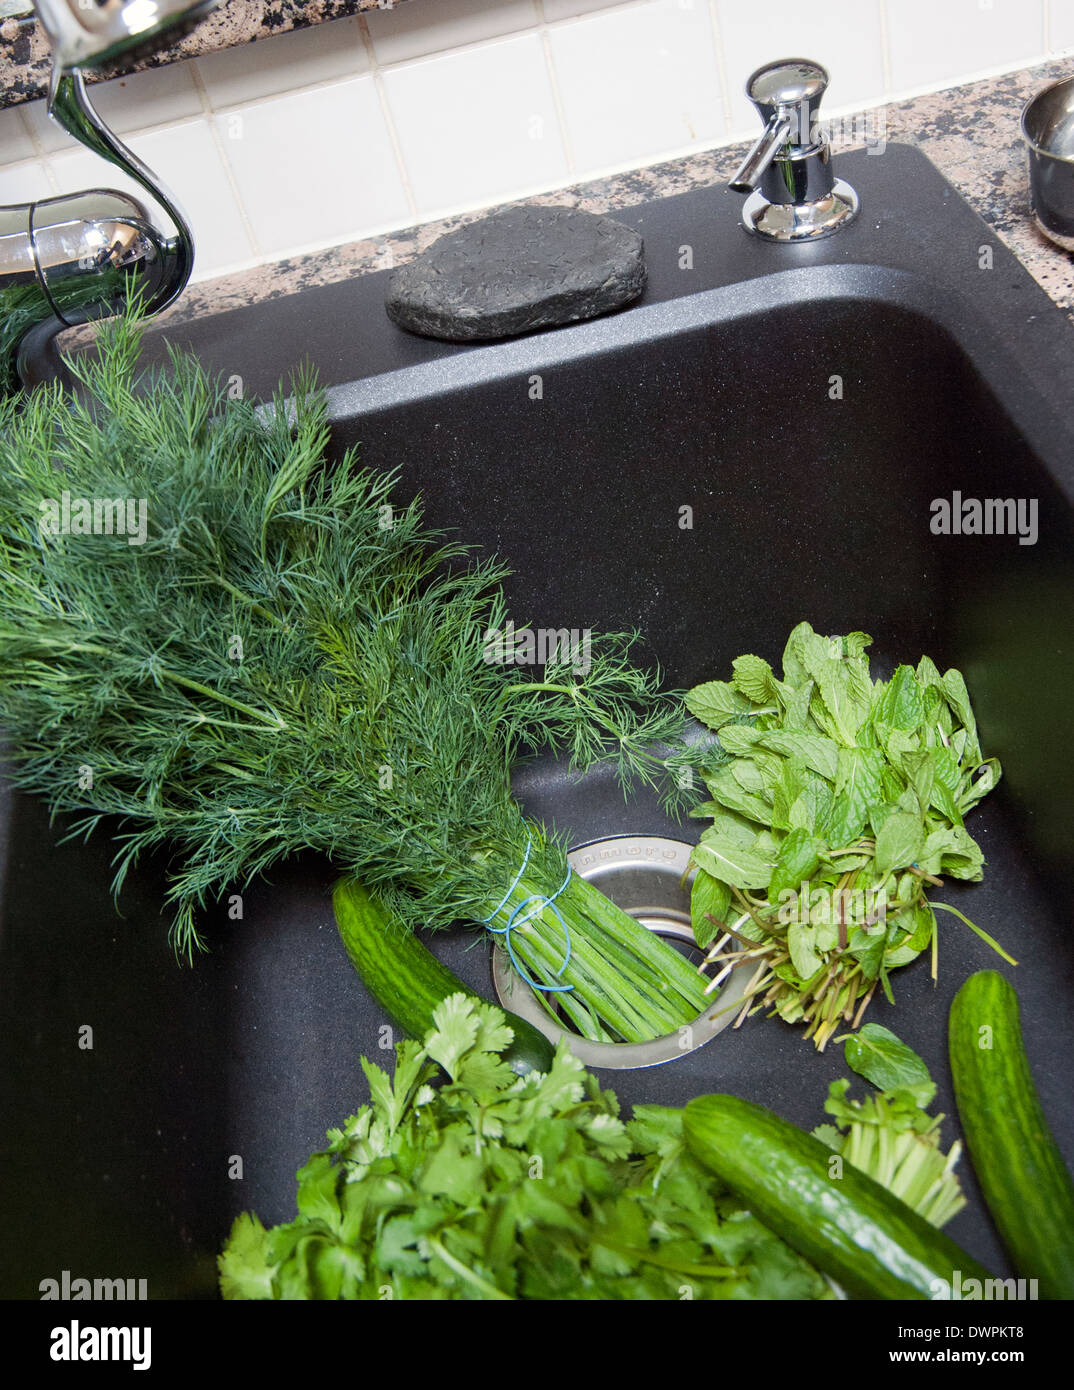 Variété de légumes verts et herbes dans un évier de cuisine prêt à être lavés Banque D'Images